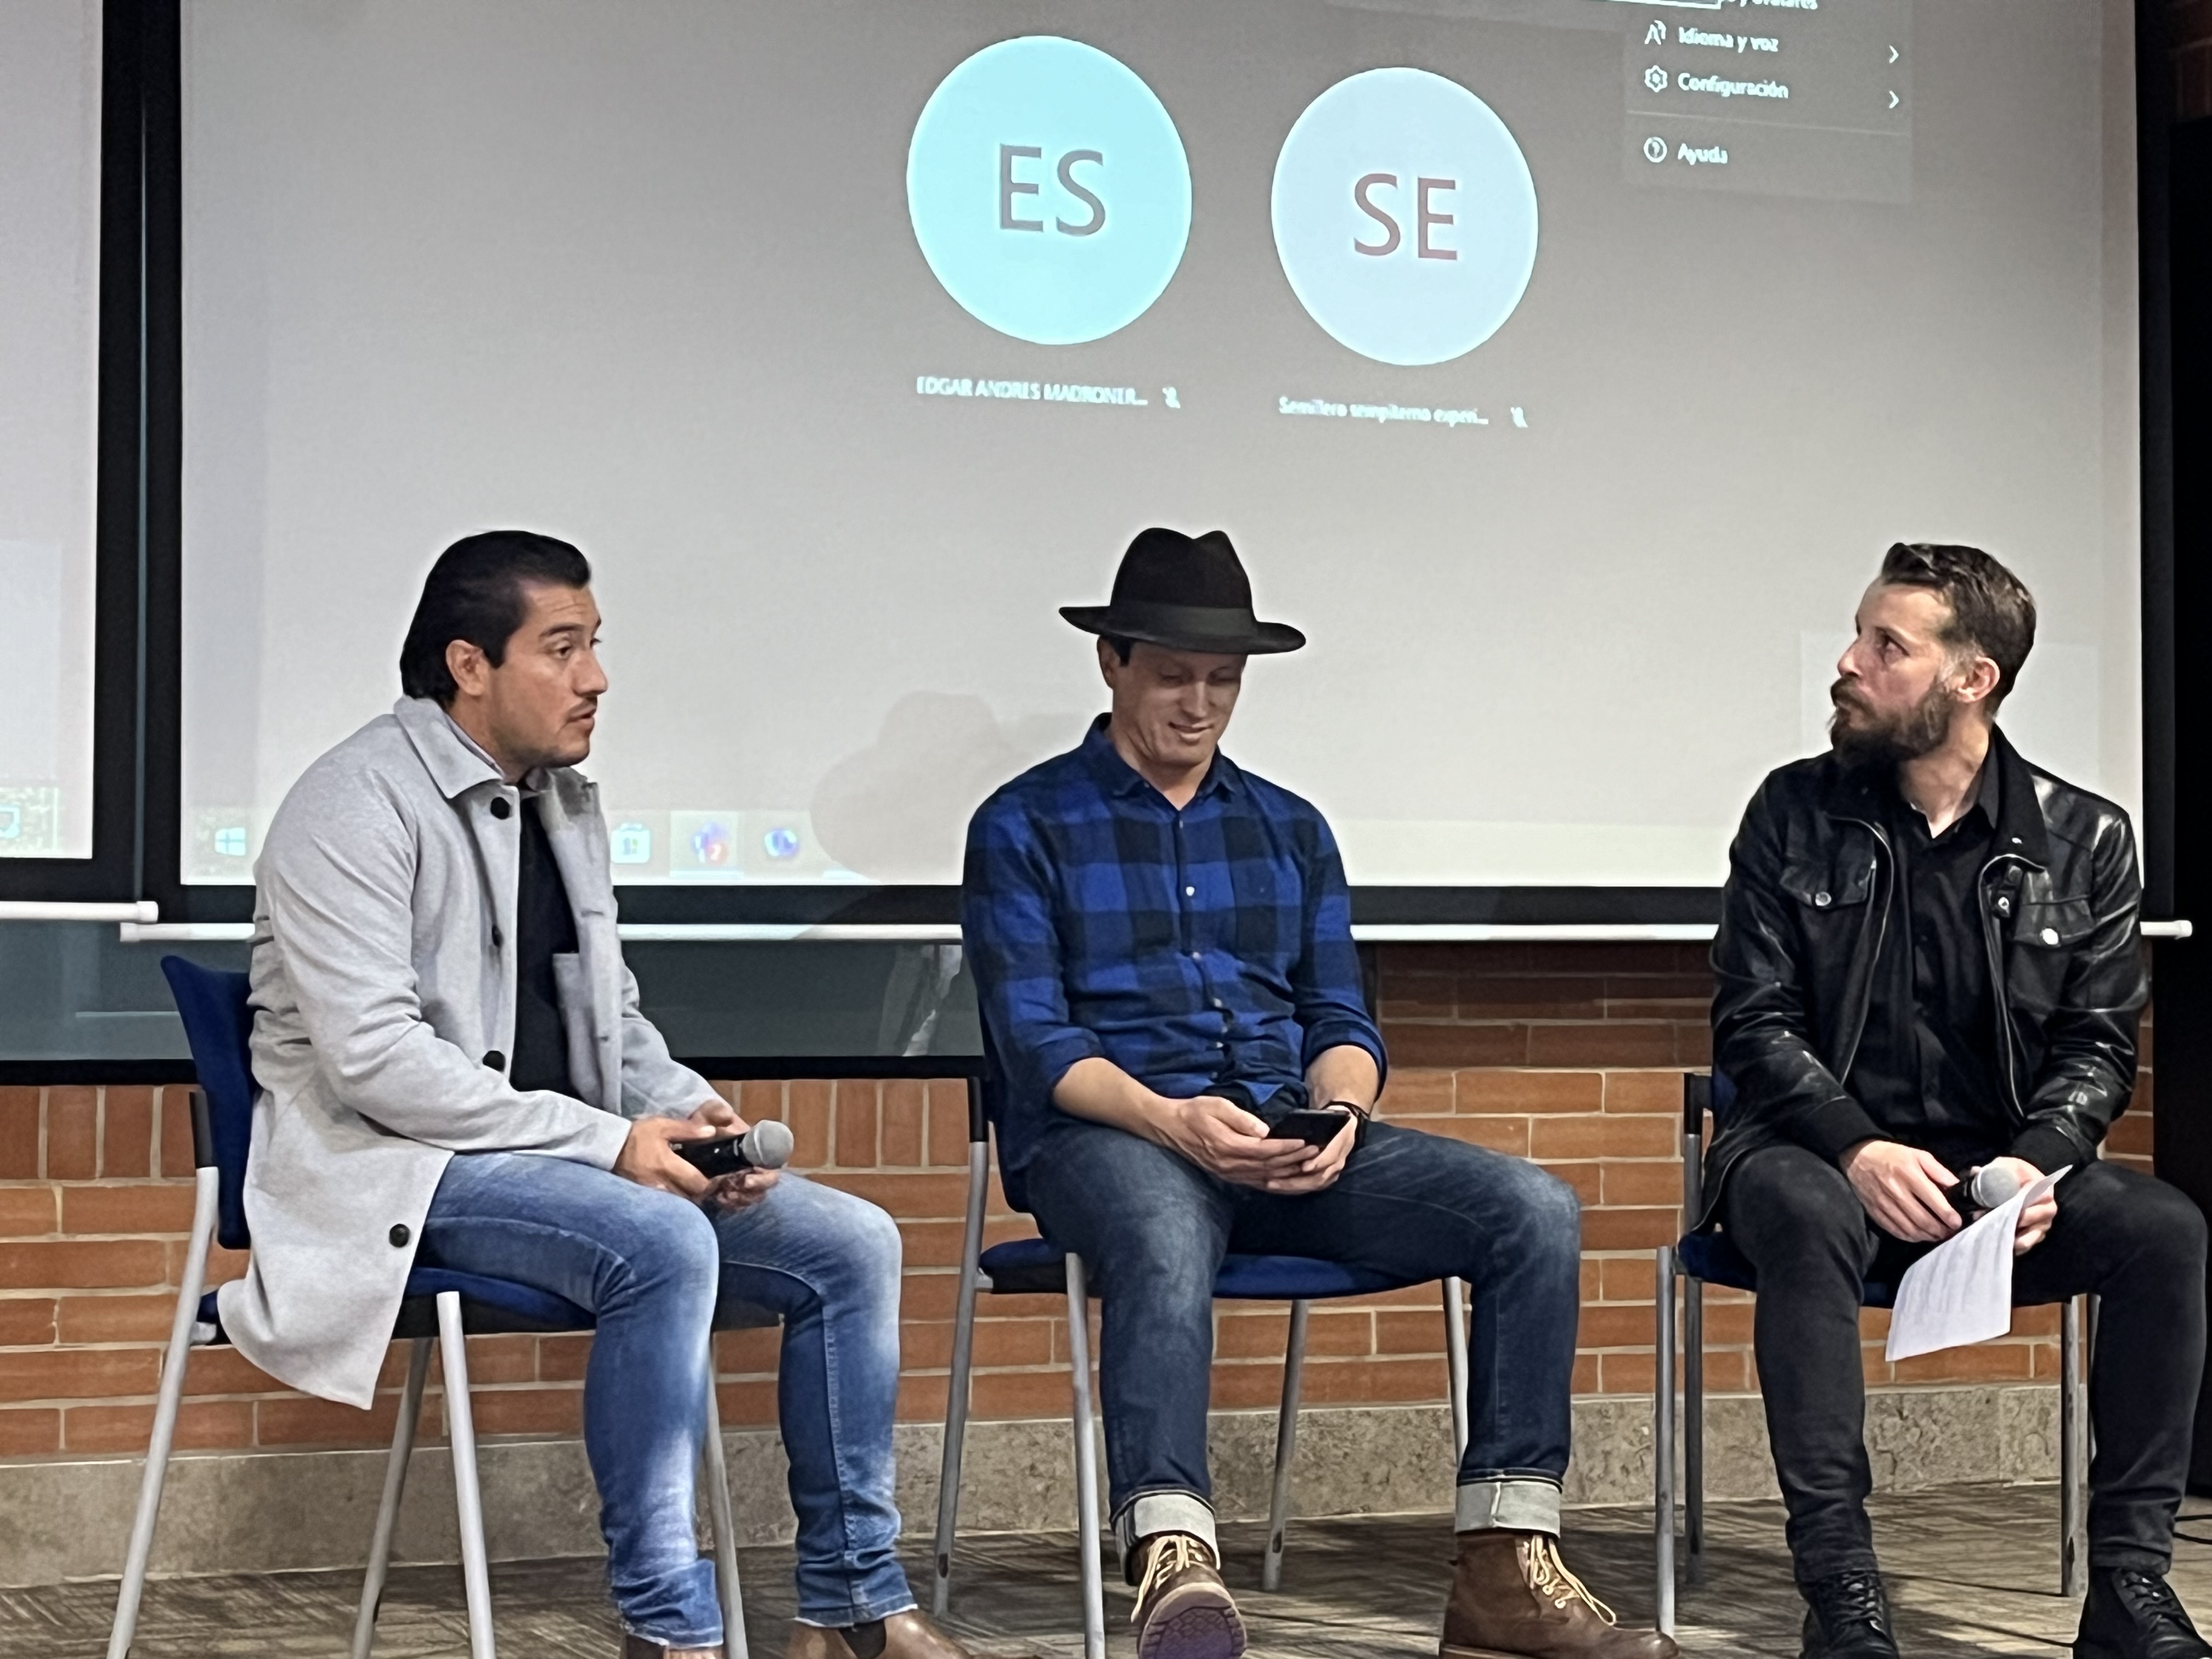 conversatorio de investigación – creación con los profesores: Fabián Gómez, Jorge Sánchez y Jaime Cortés, moderado por el profesor Jonnathan Blake